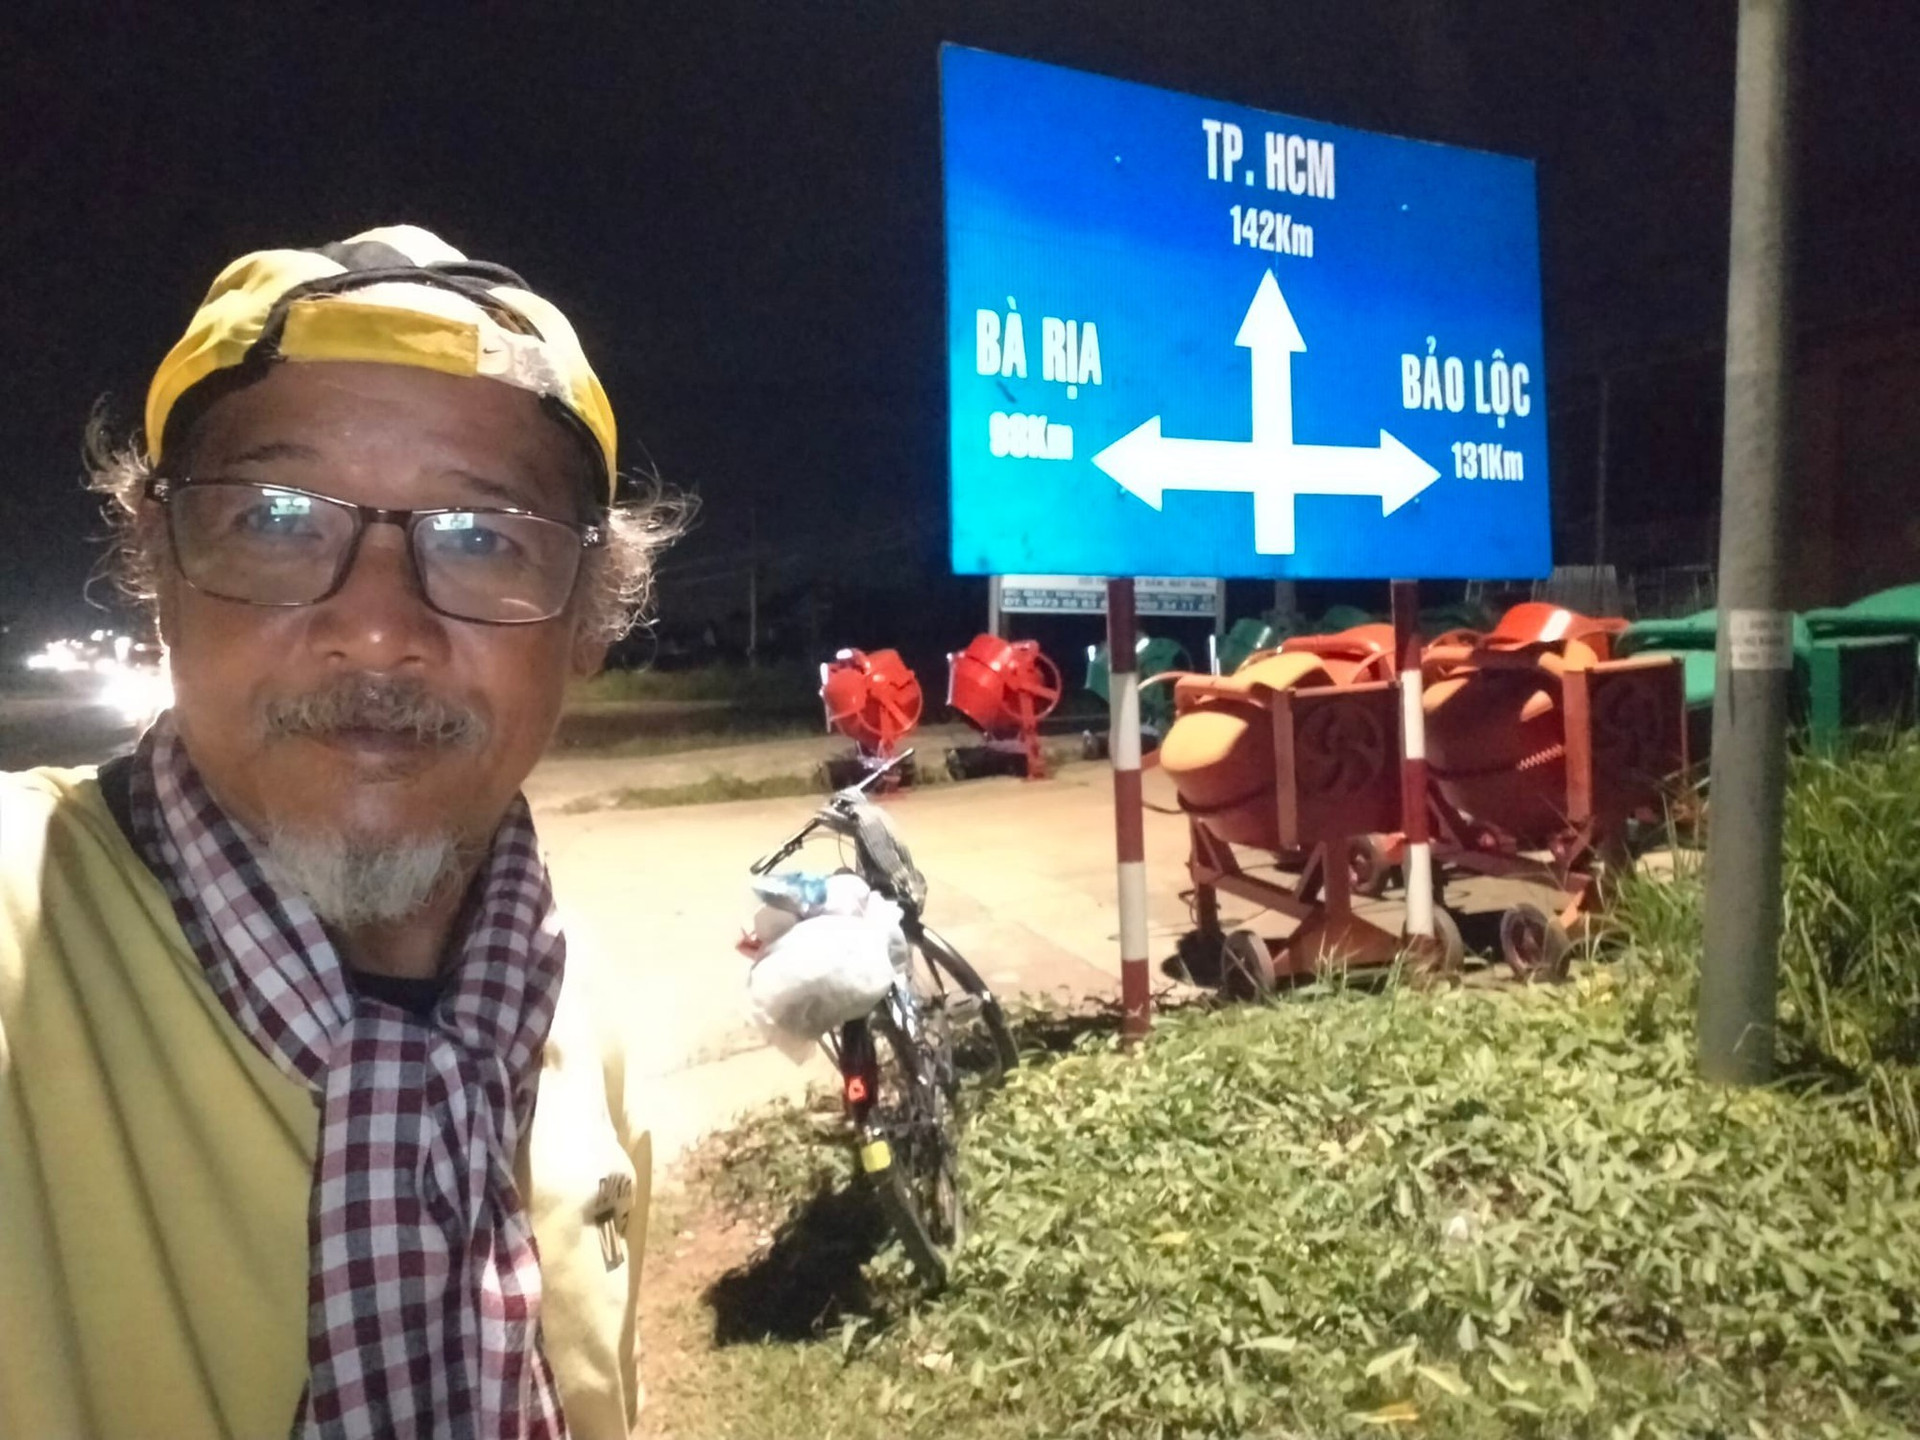 Nhà du khảo 61 tuổi một mình đạp xe 1.800km từ Bắc vào Nam: 'Đi để thấy Việt Nam mình tươi đẹp' - Ảnh 1.